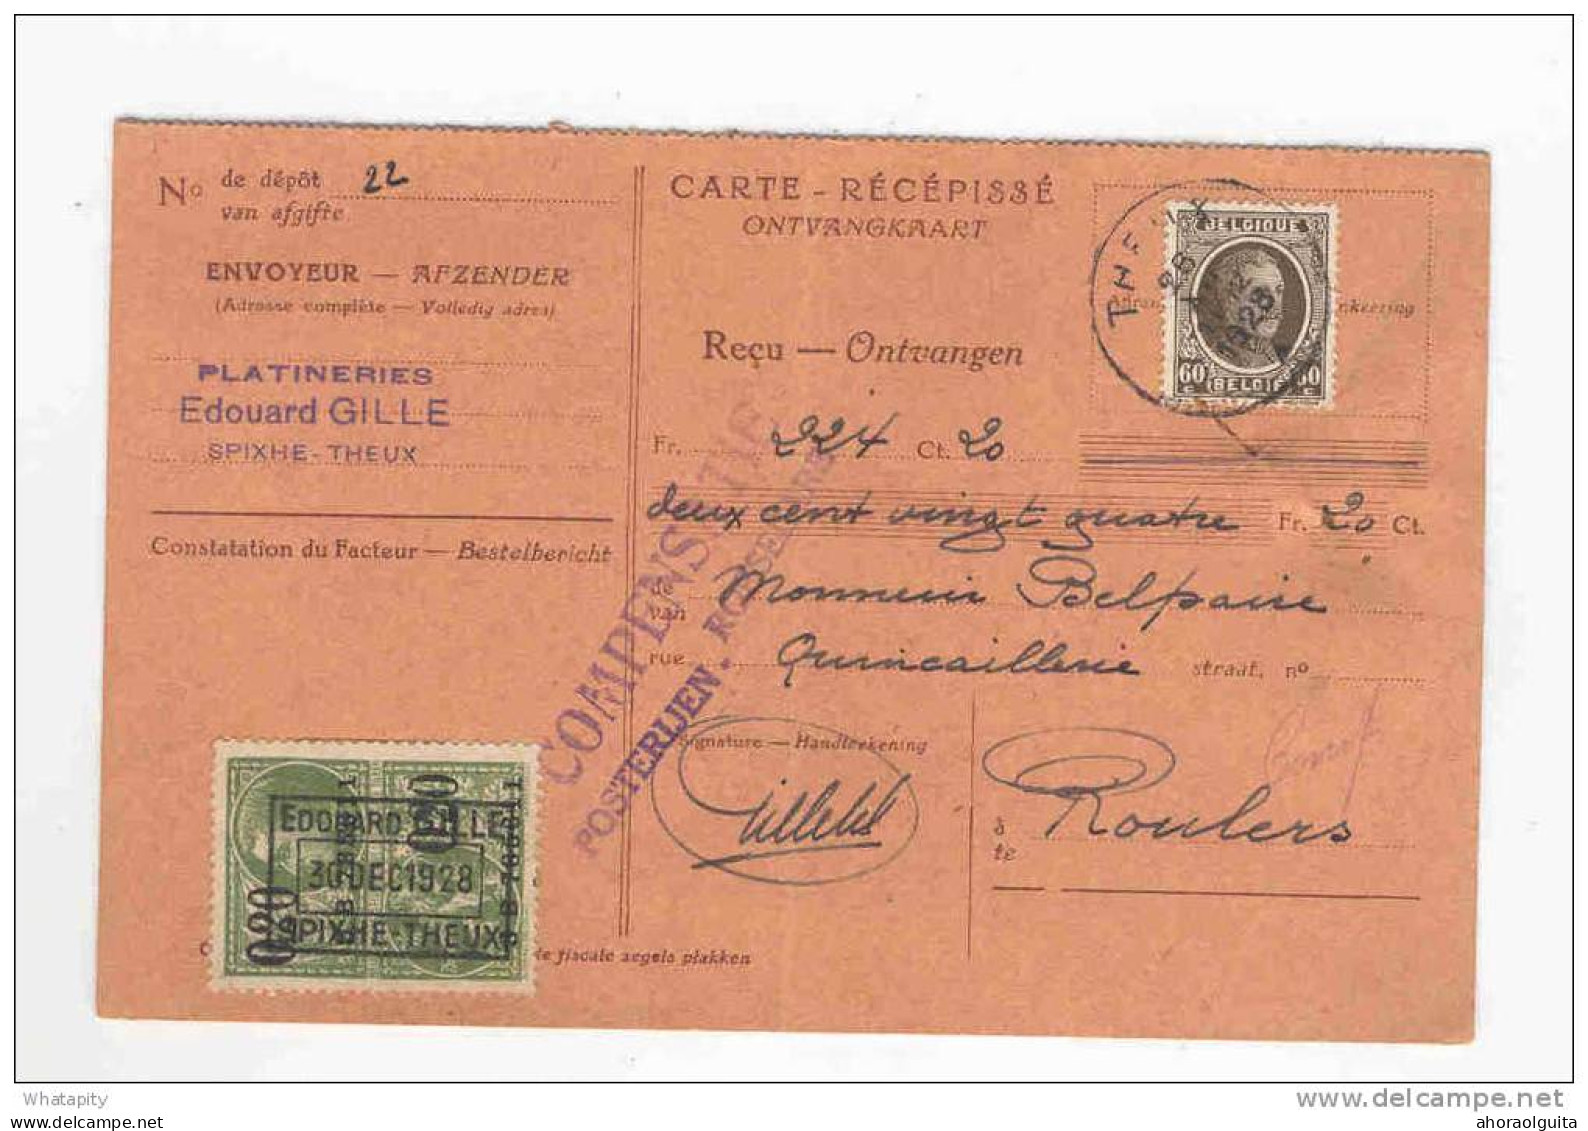 2 Cartes Récépissés 1928/1936 Vers ROULERS - Deux Griffes Différentes Compensatie Posterijen ROESELARE   --  KK818 - Dépliants De La Poste